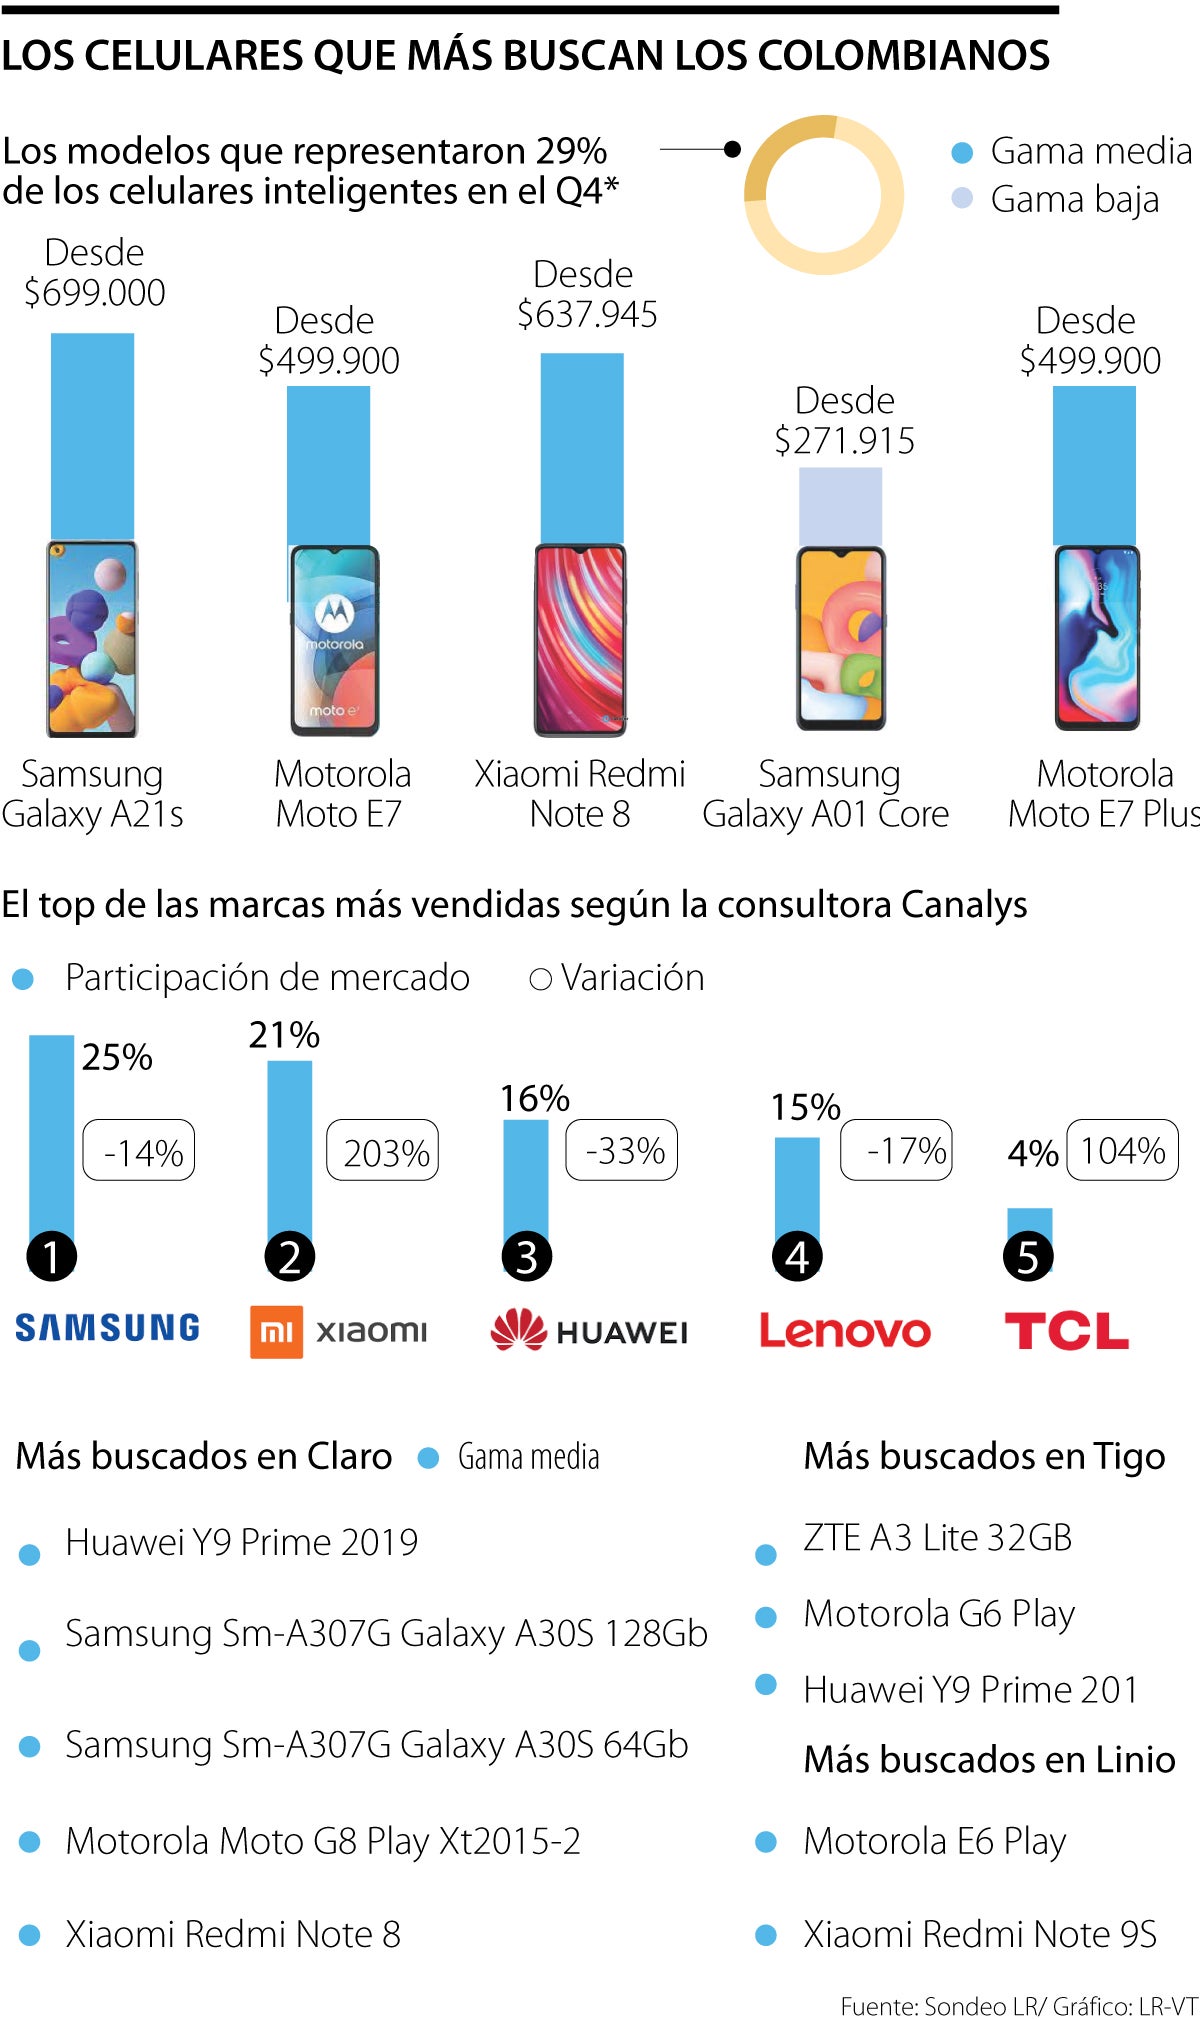 Conozca cuáles son los cinco celulares más populares en el mercado